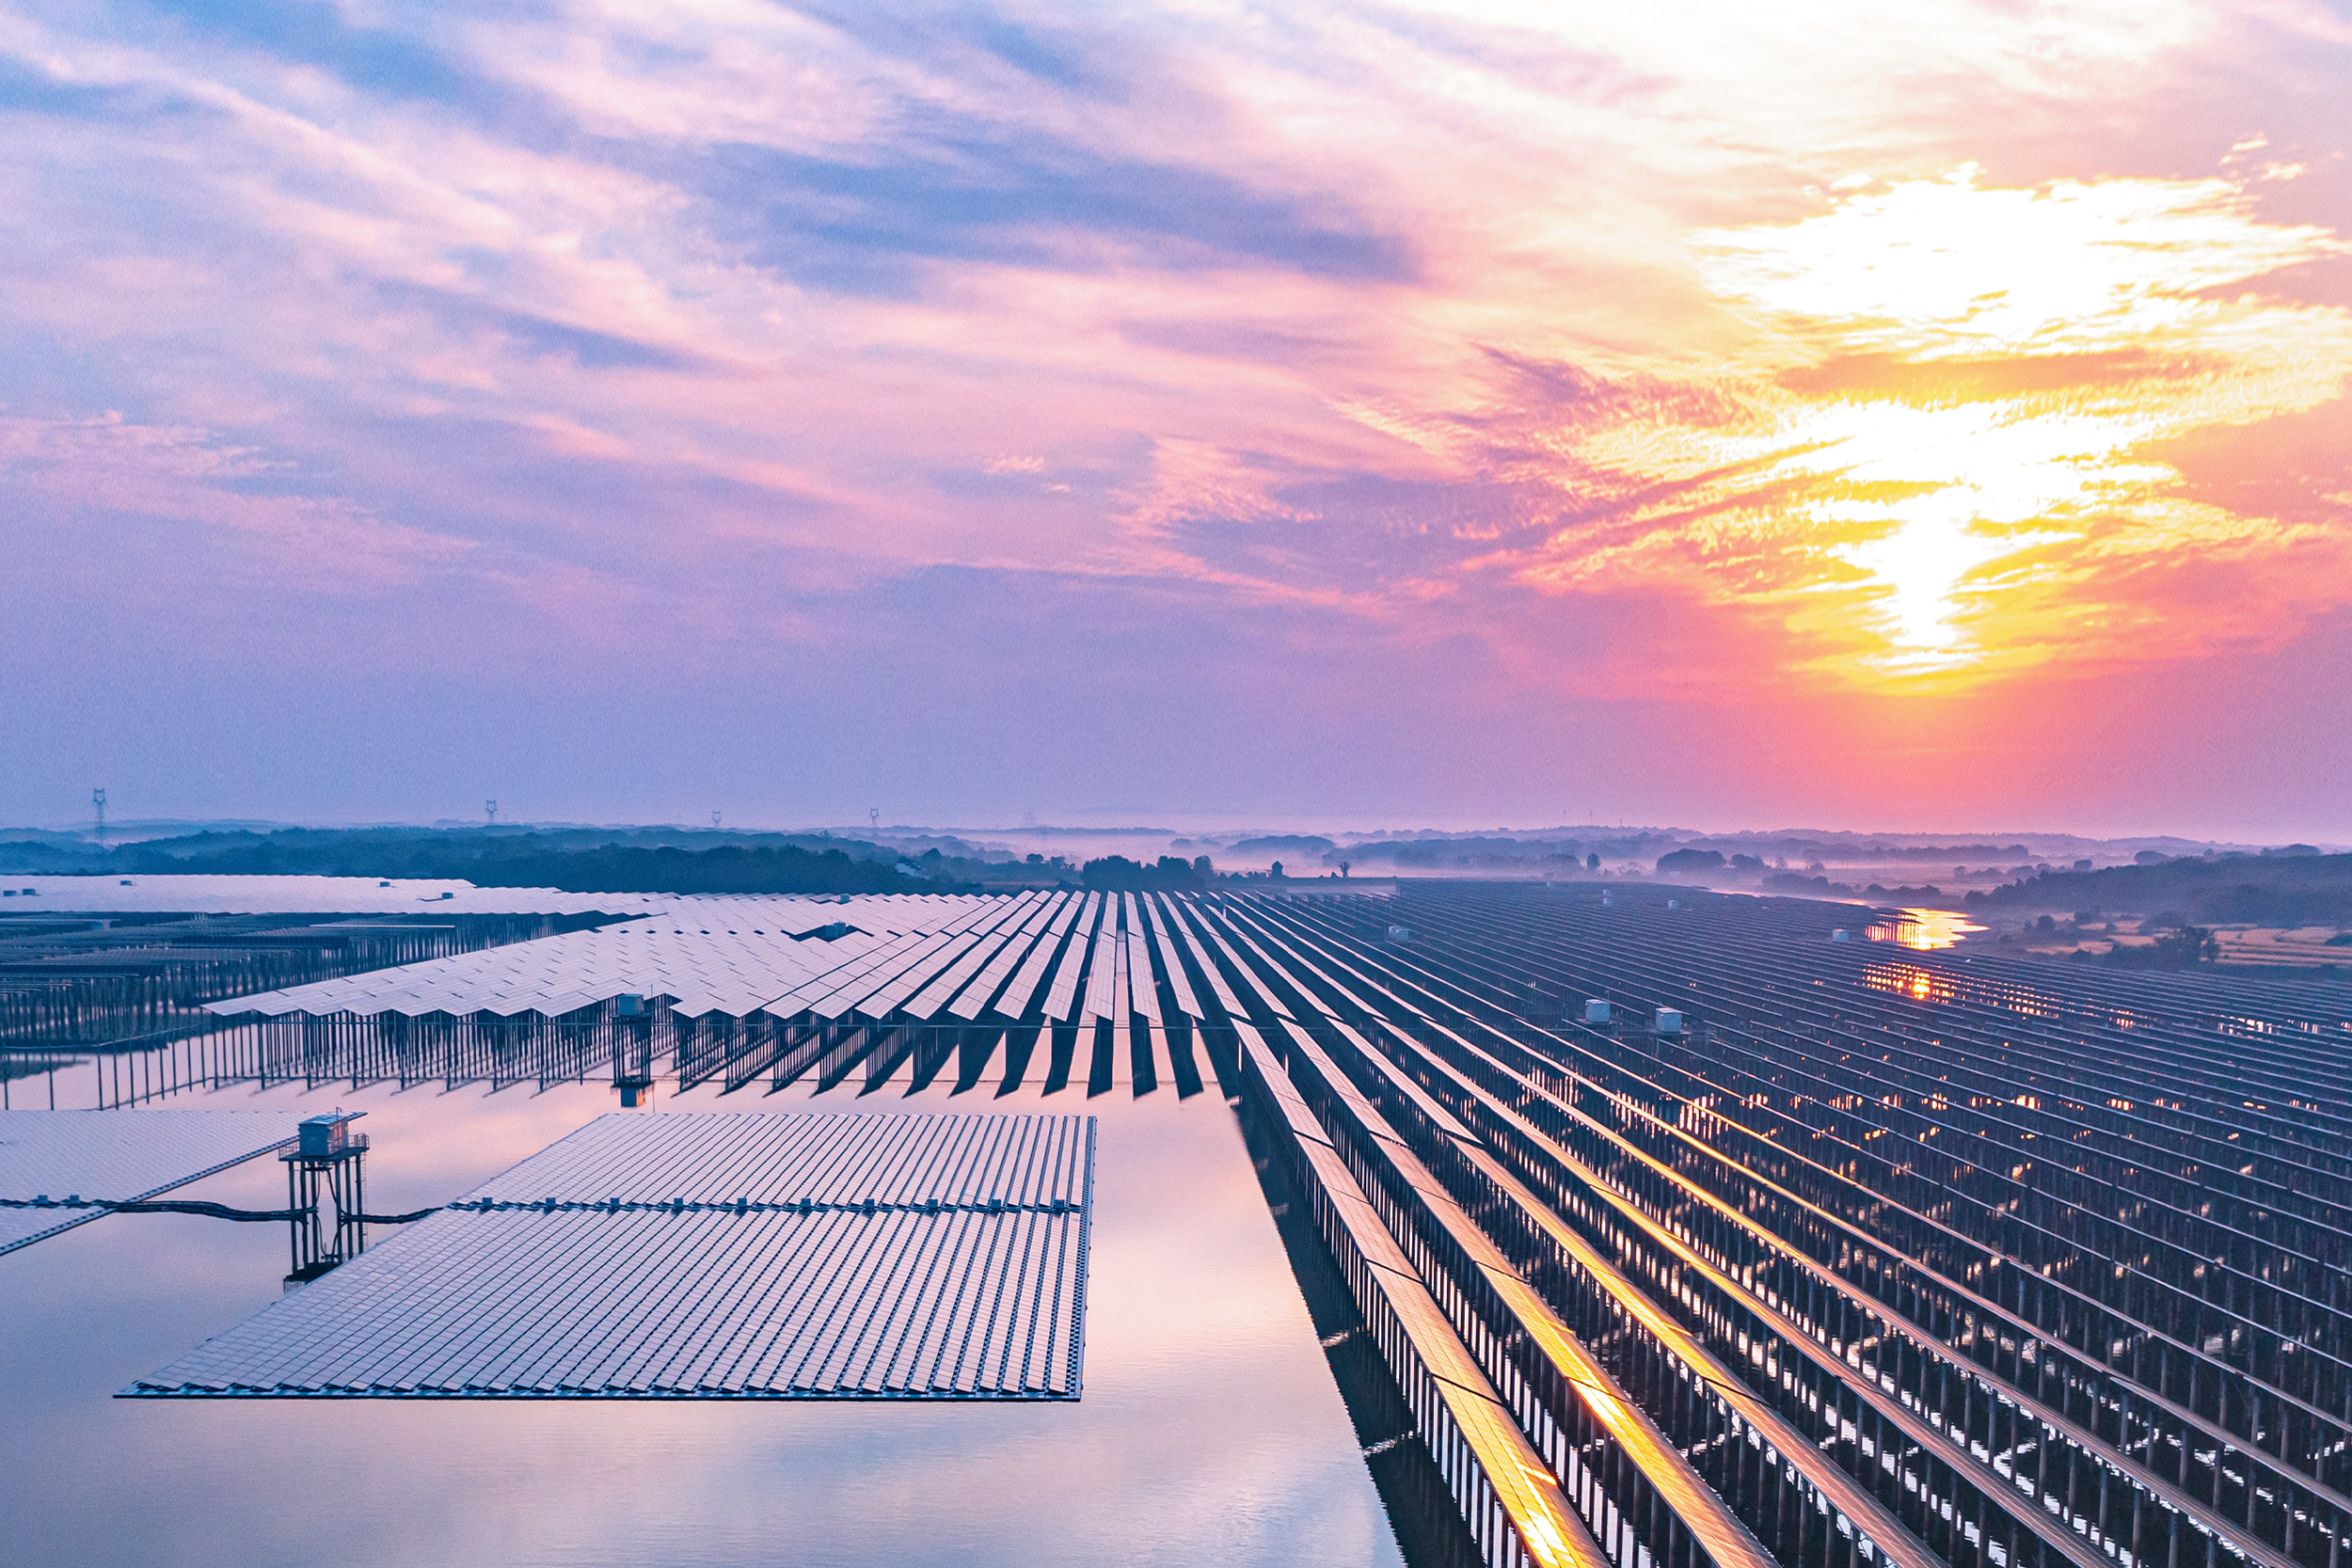 Image of solar energy panels on a solar farm